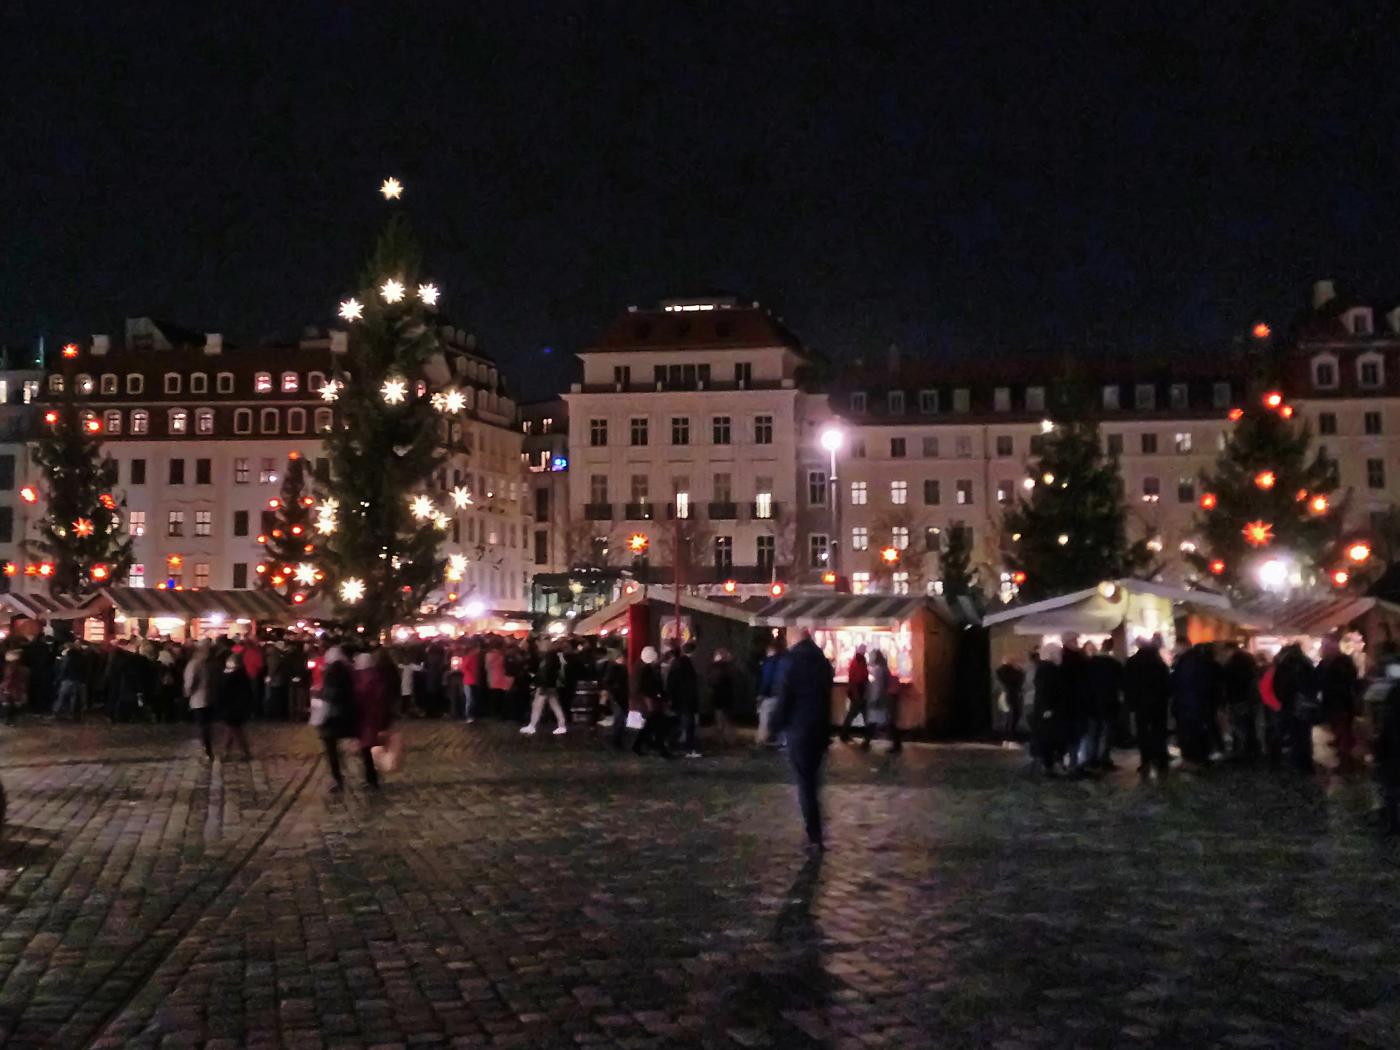 Weihnachtsmarkt am Dresdner Schloss